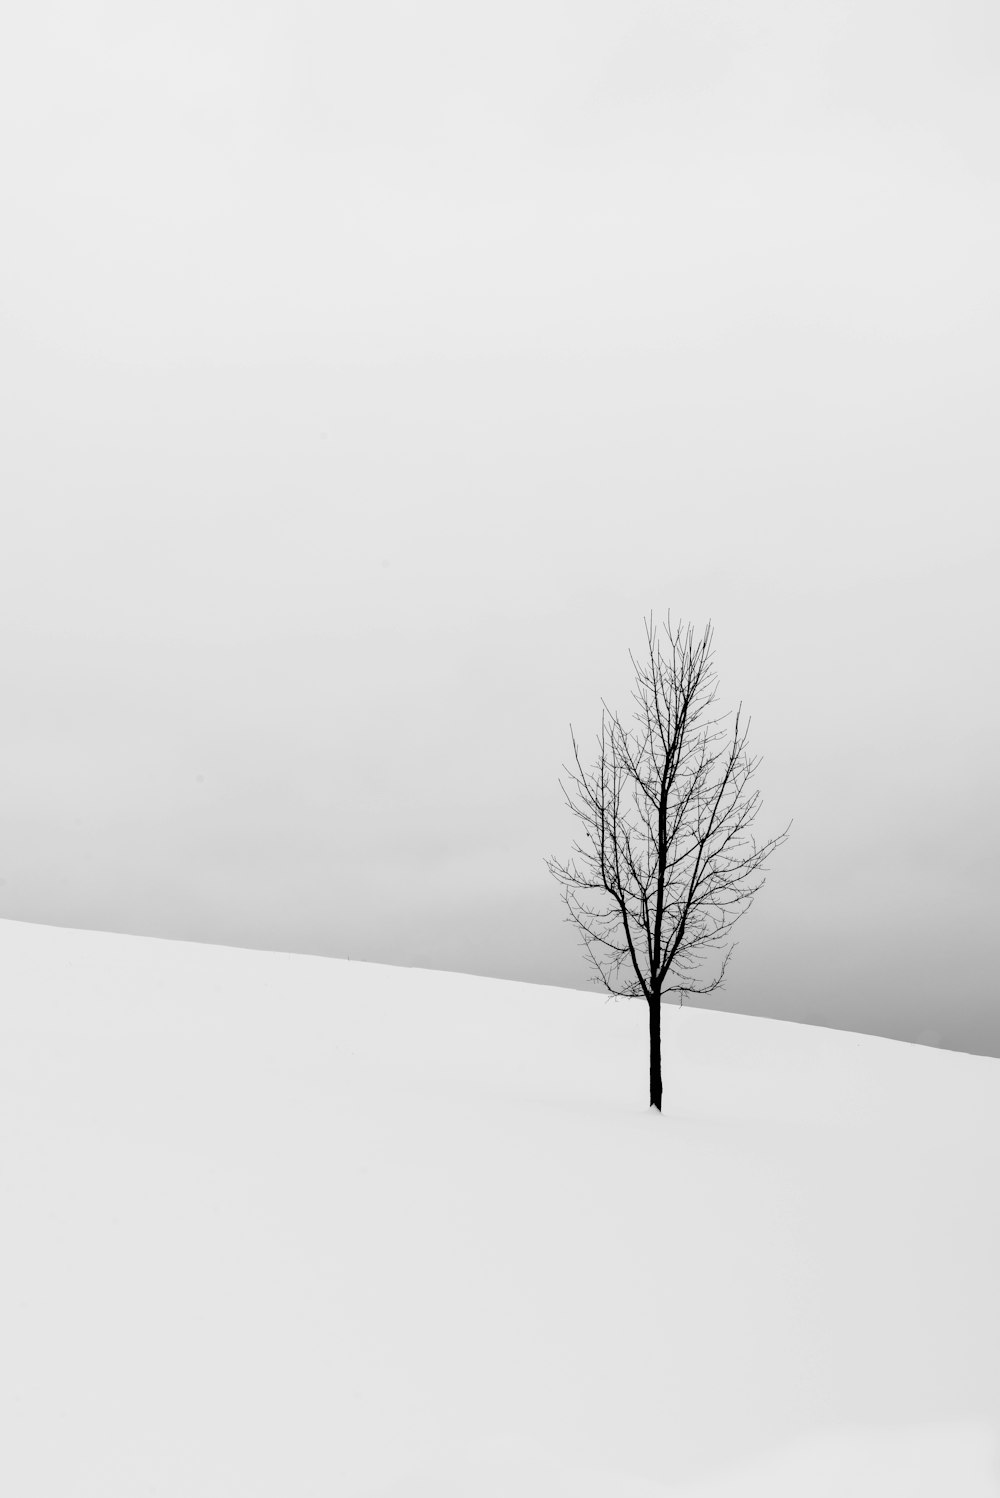 Árvore nua no meio do campo nevado